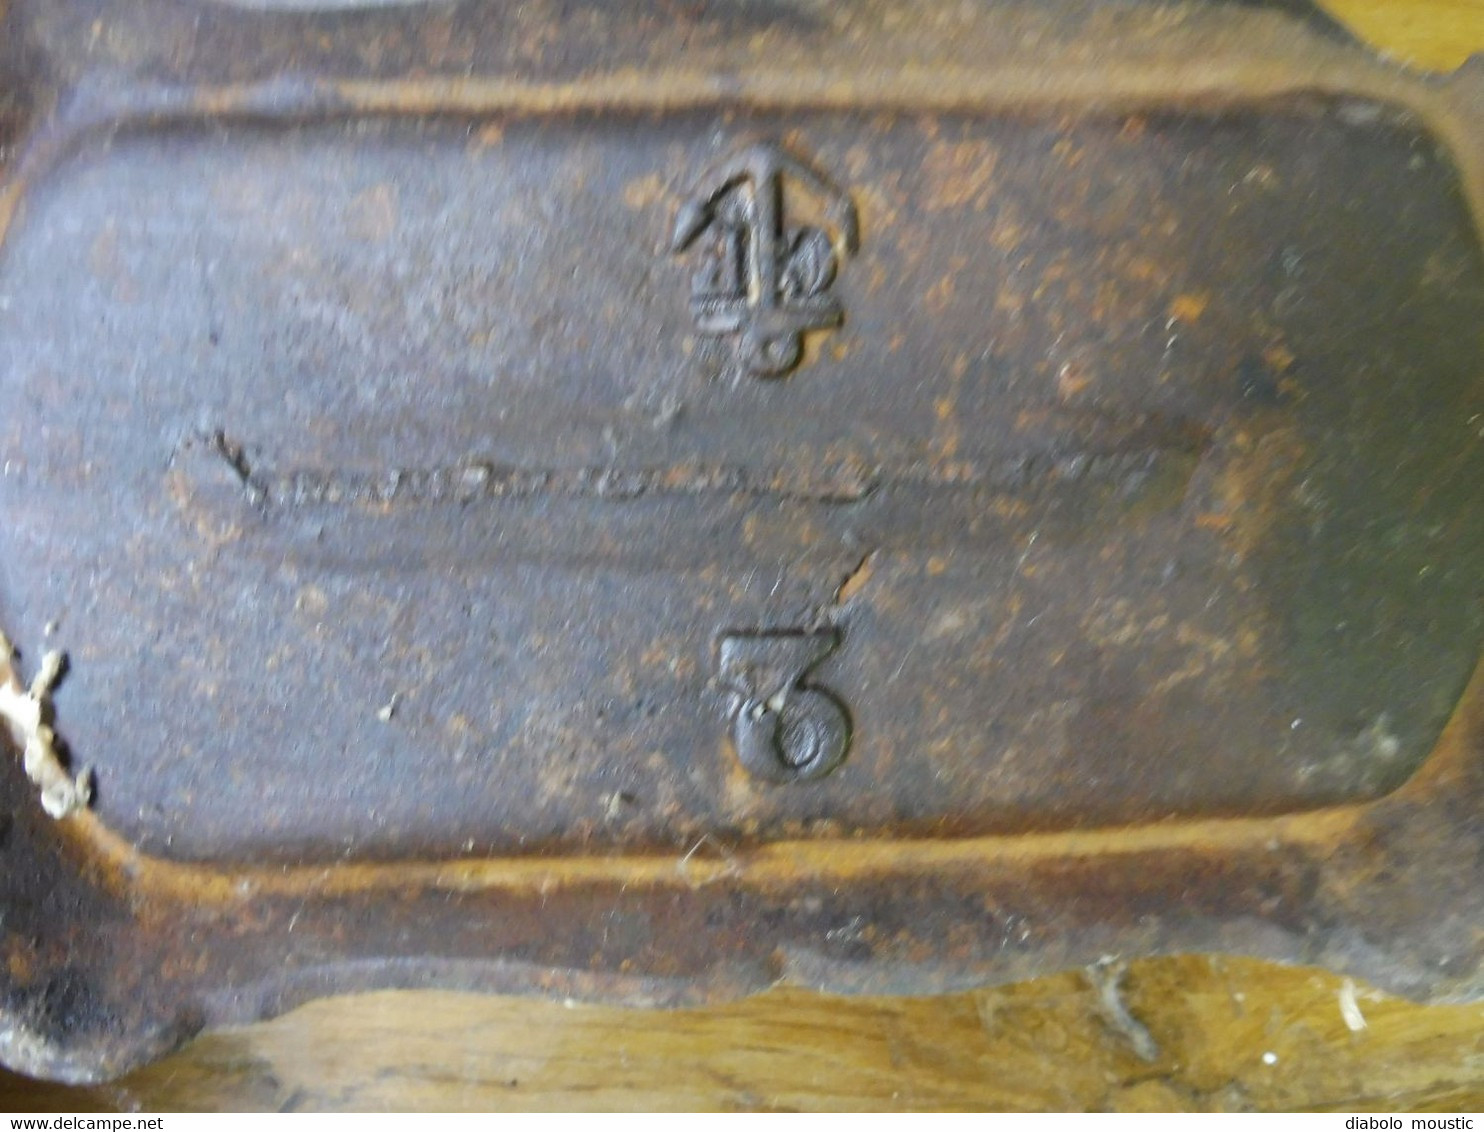 Chaufferette ancienne en fonte ( marque moulée du fabricant ANCRE de MARINE   (voir 2e et 6e photo))